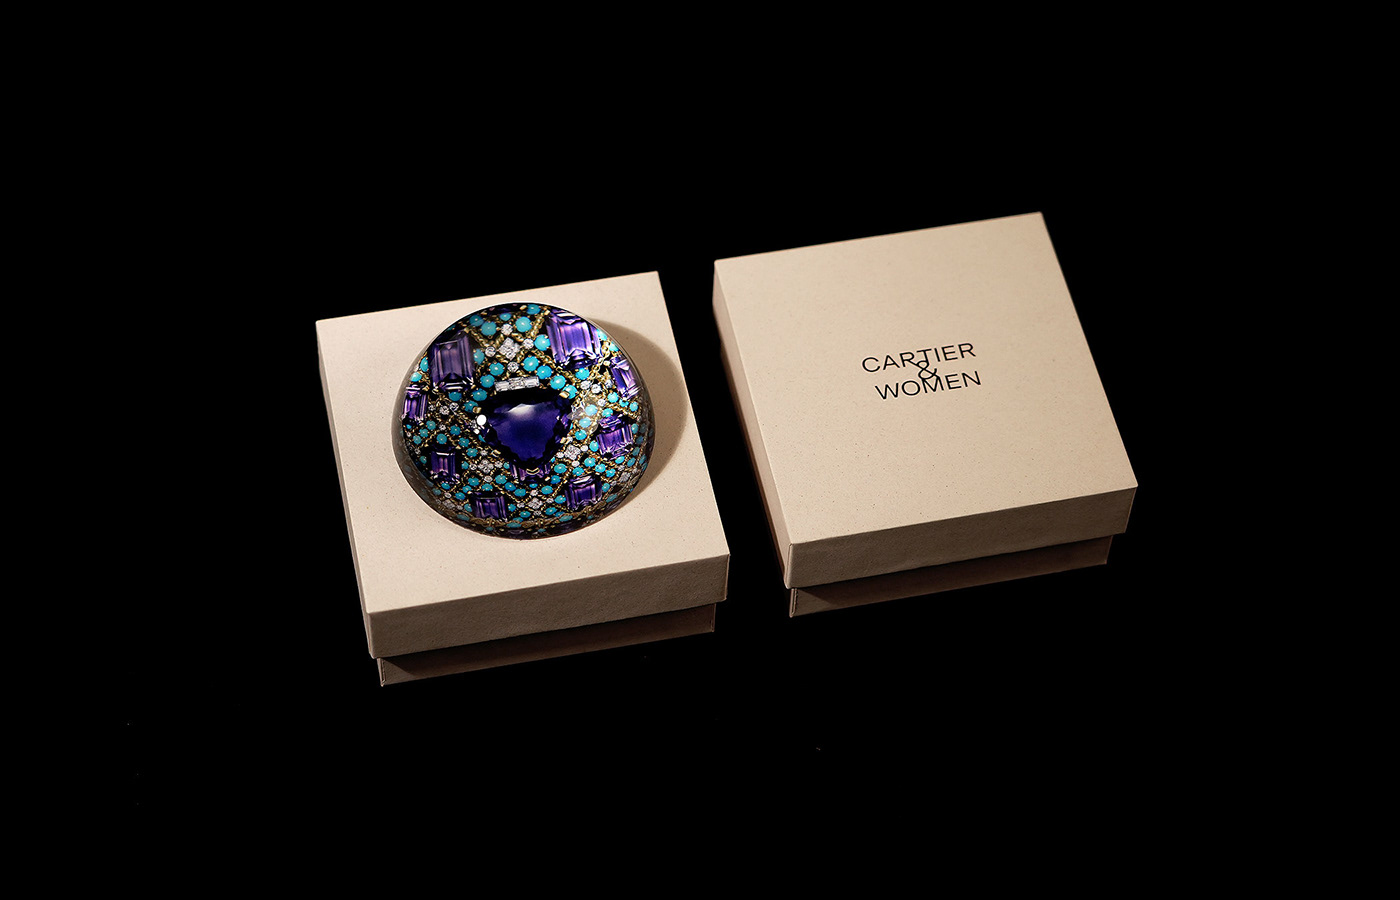 Cartier merchandise Exhibition  graphic design  luxury premium packagining